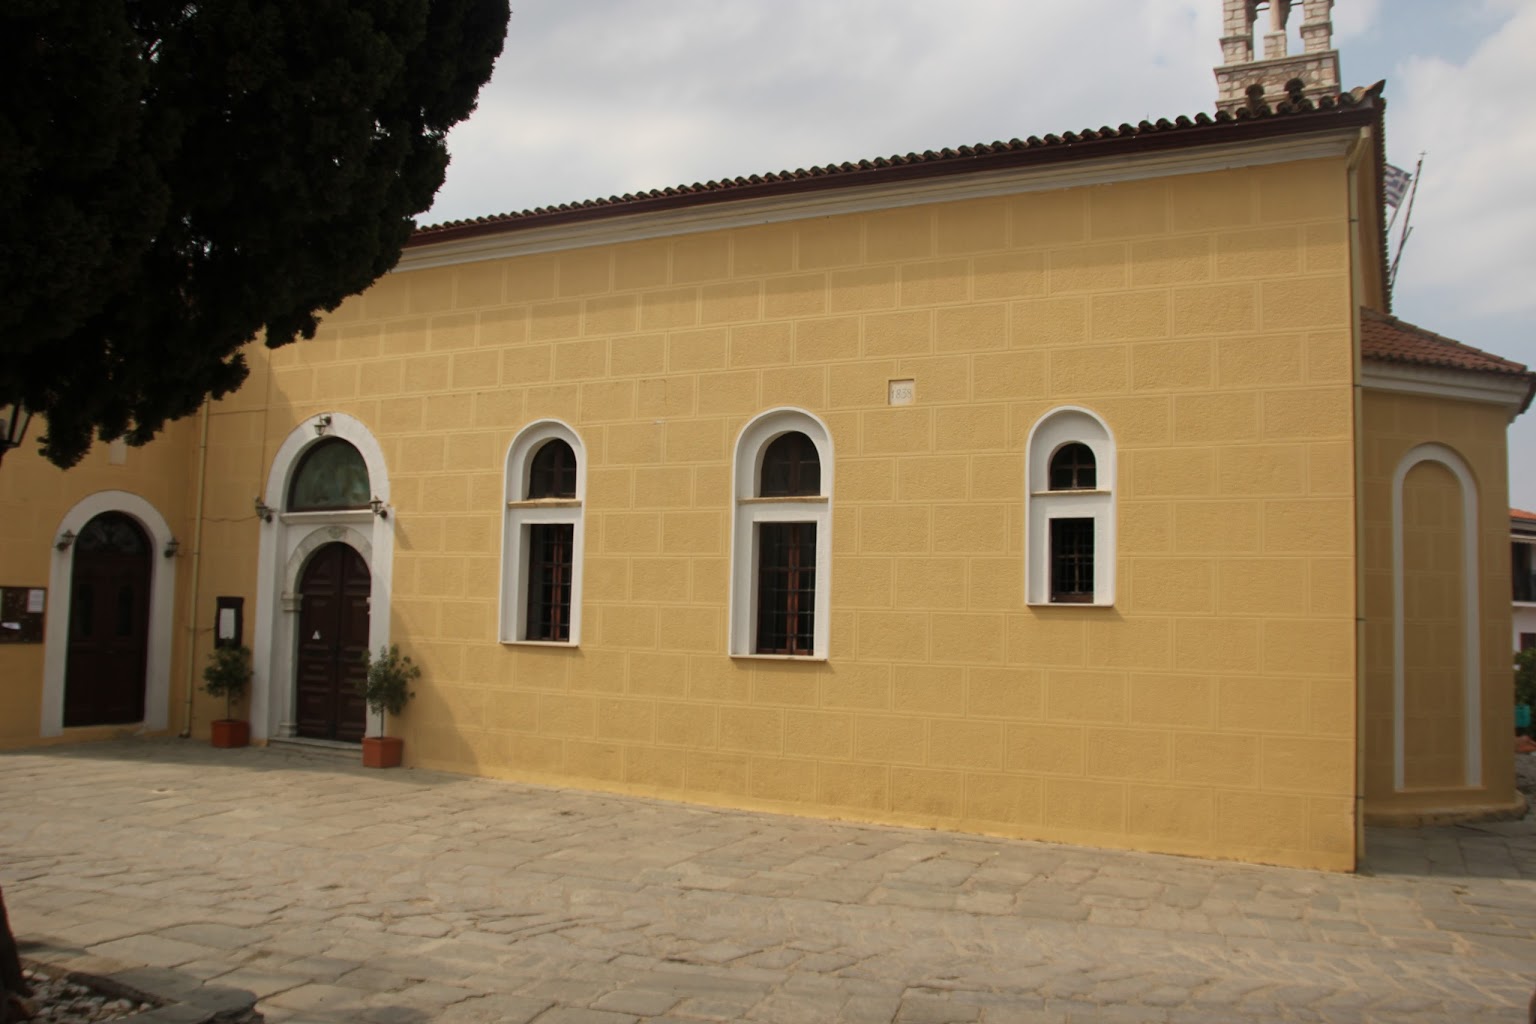 Panagia Limnia (Holy Mary) Church